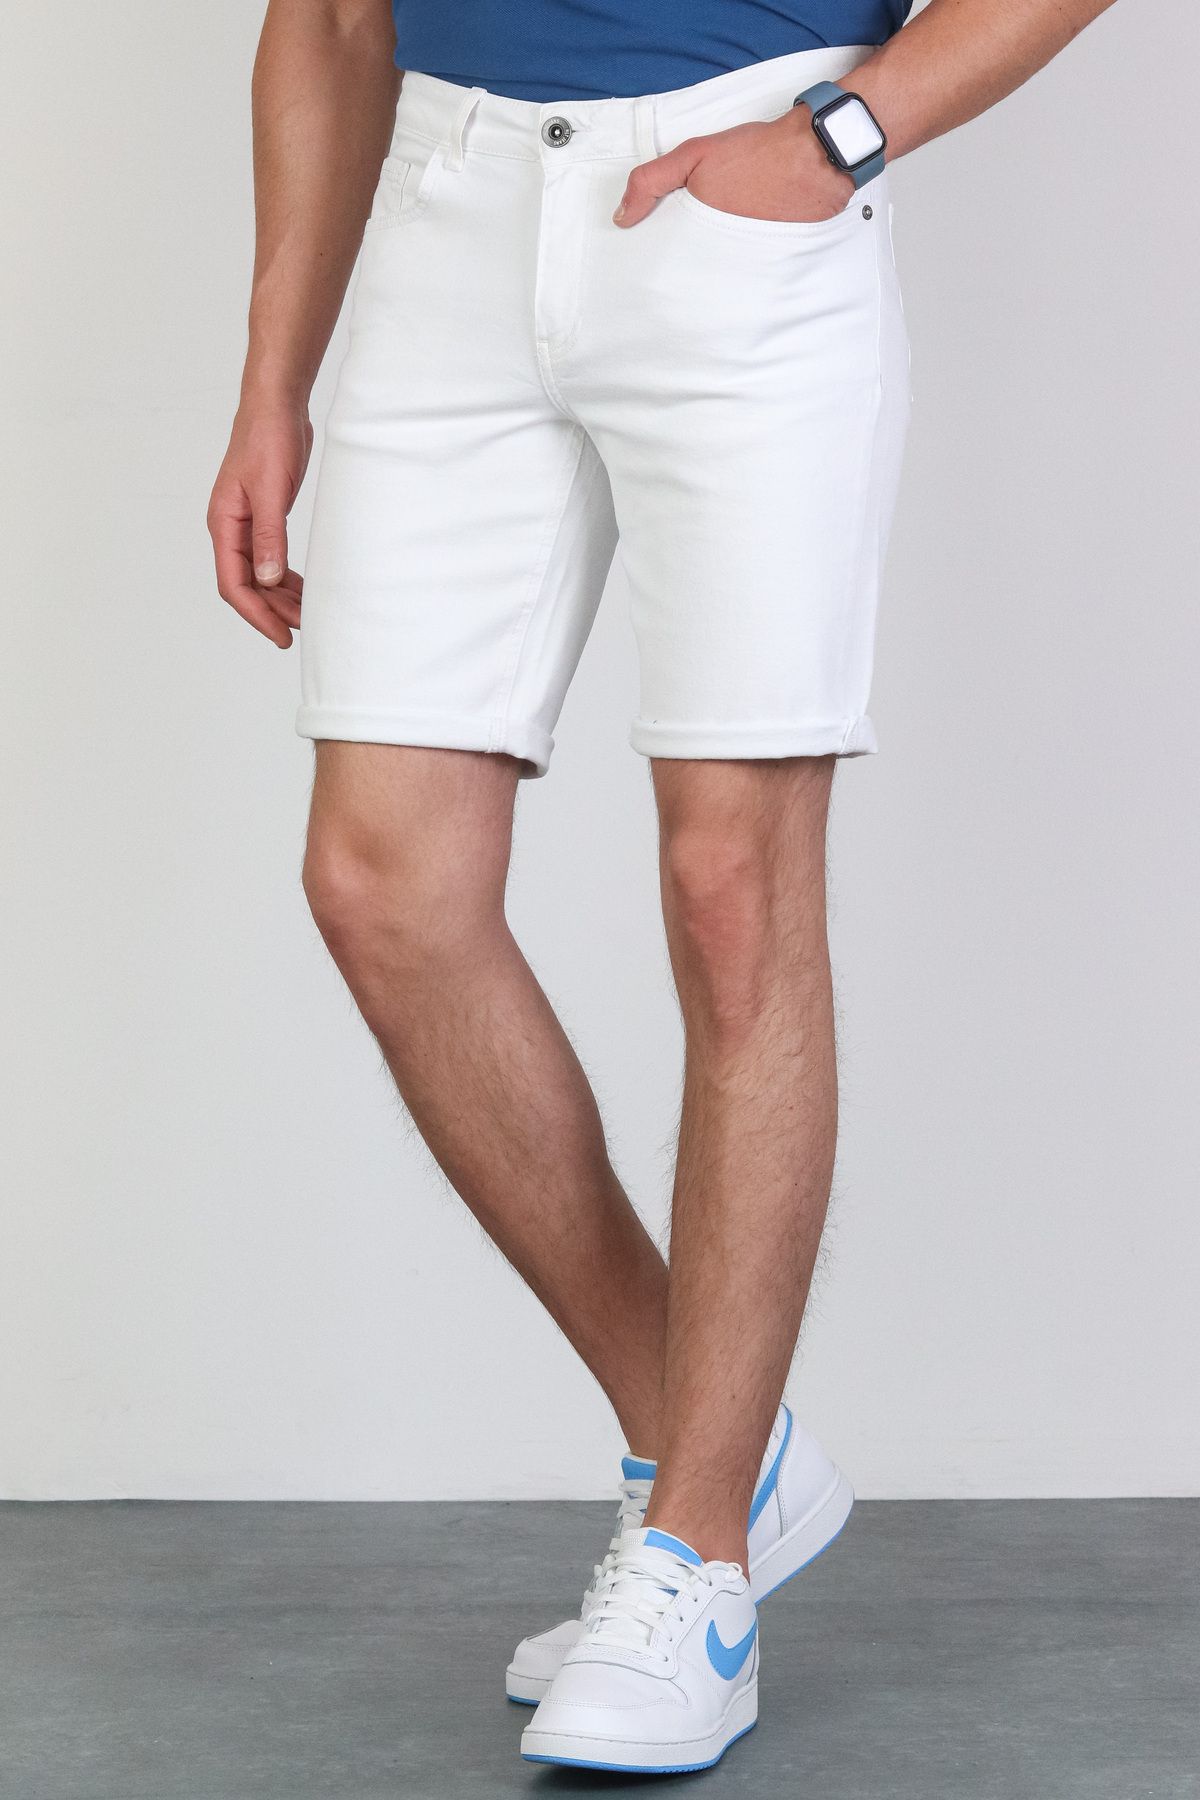 HLT JEANS Erkek Beyaz Slim Kesim Comfort Likralı Denim Esnek Jeans Kot Şort THOMAS-BEYAZ